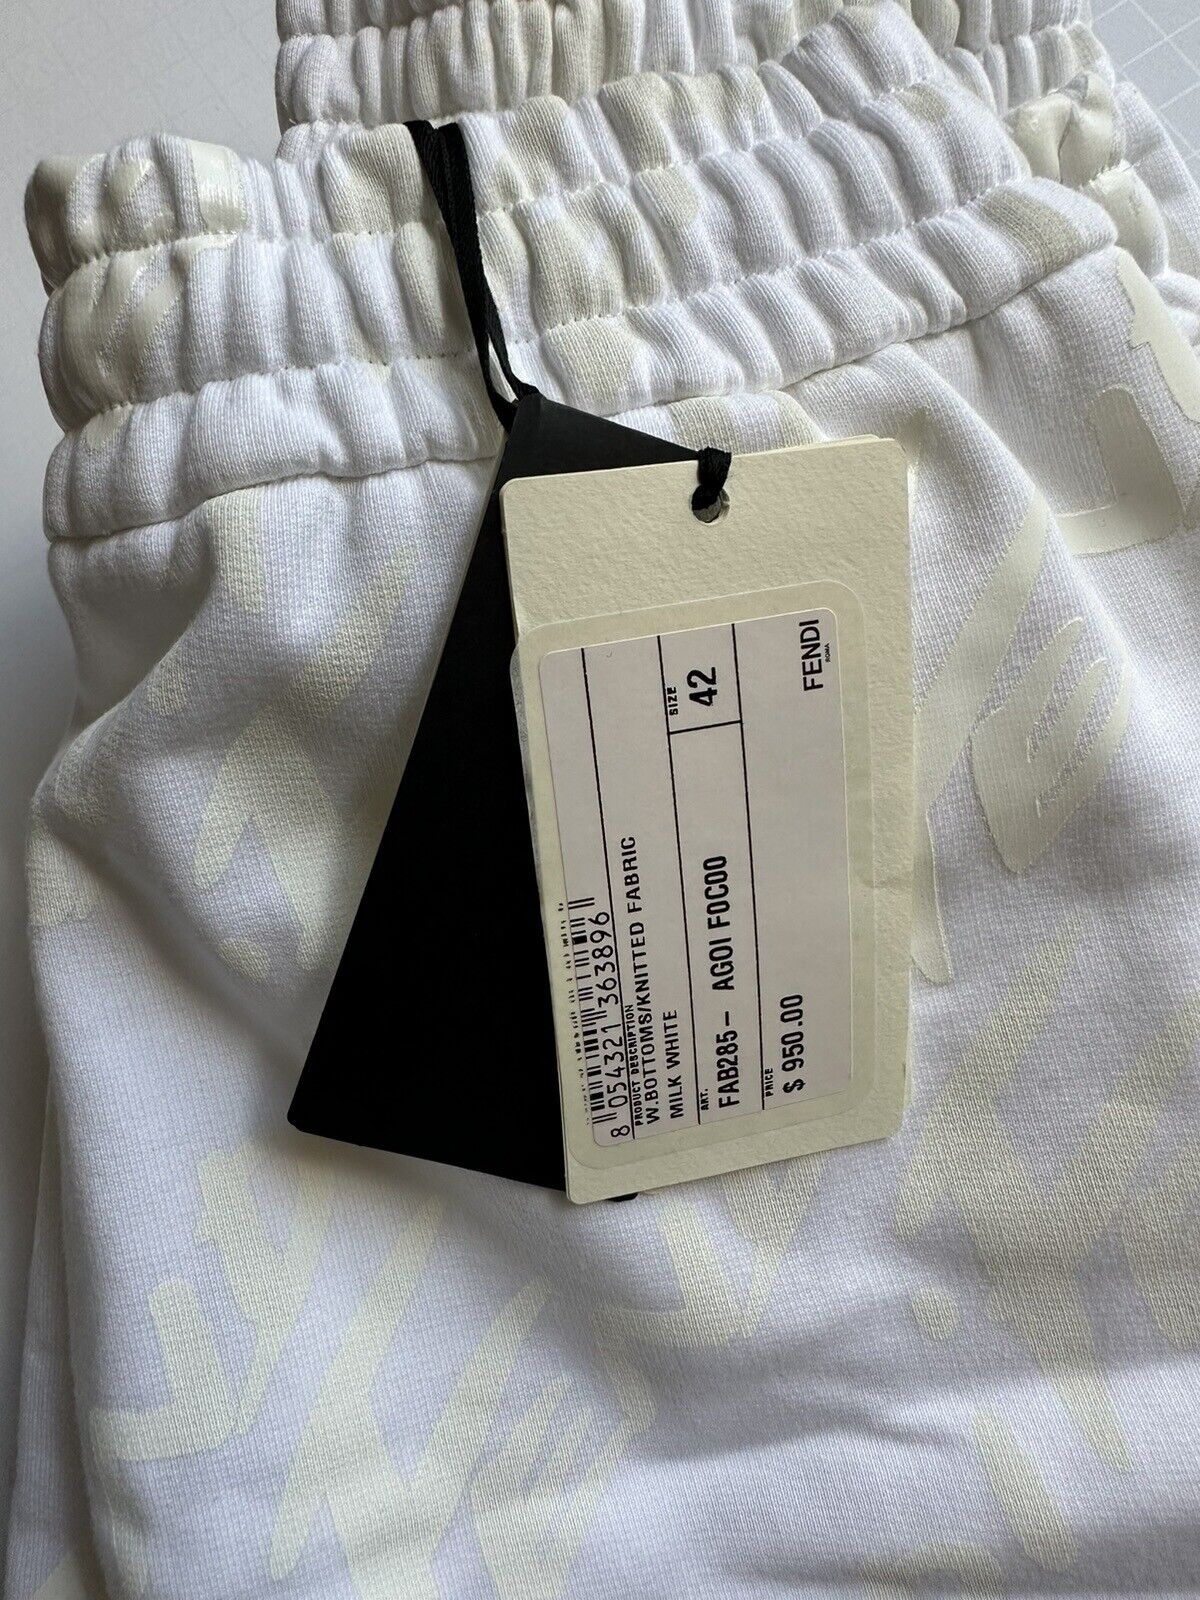 Neu mit Etikett: 950 $ Fendi Damen-Strickhose mit Fendi-Print in Milchweiß, Größe 42 (6 US) IT 